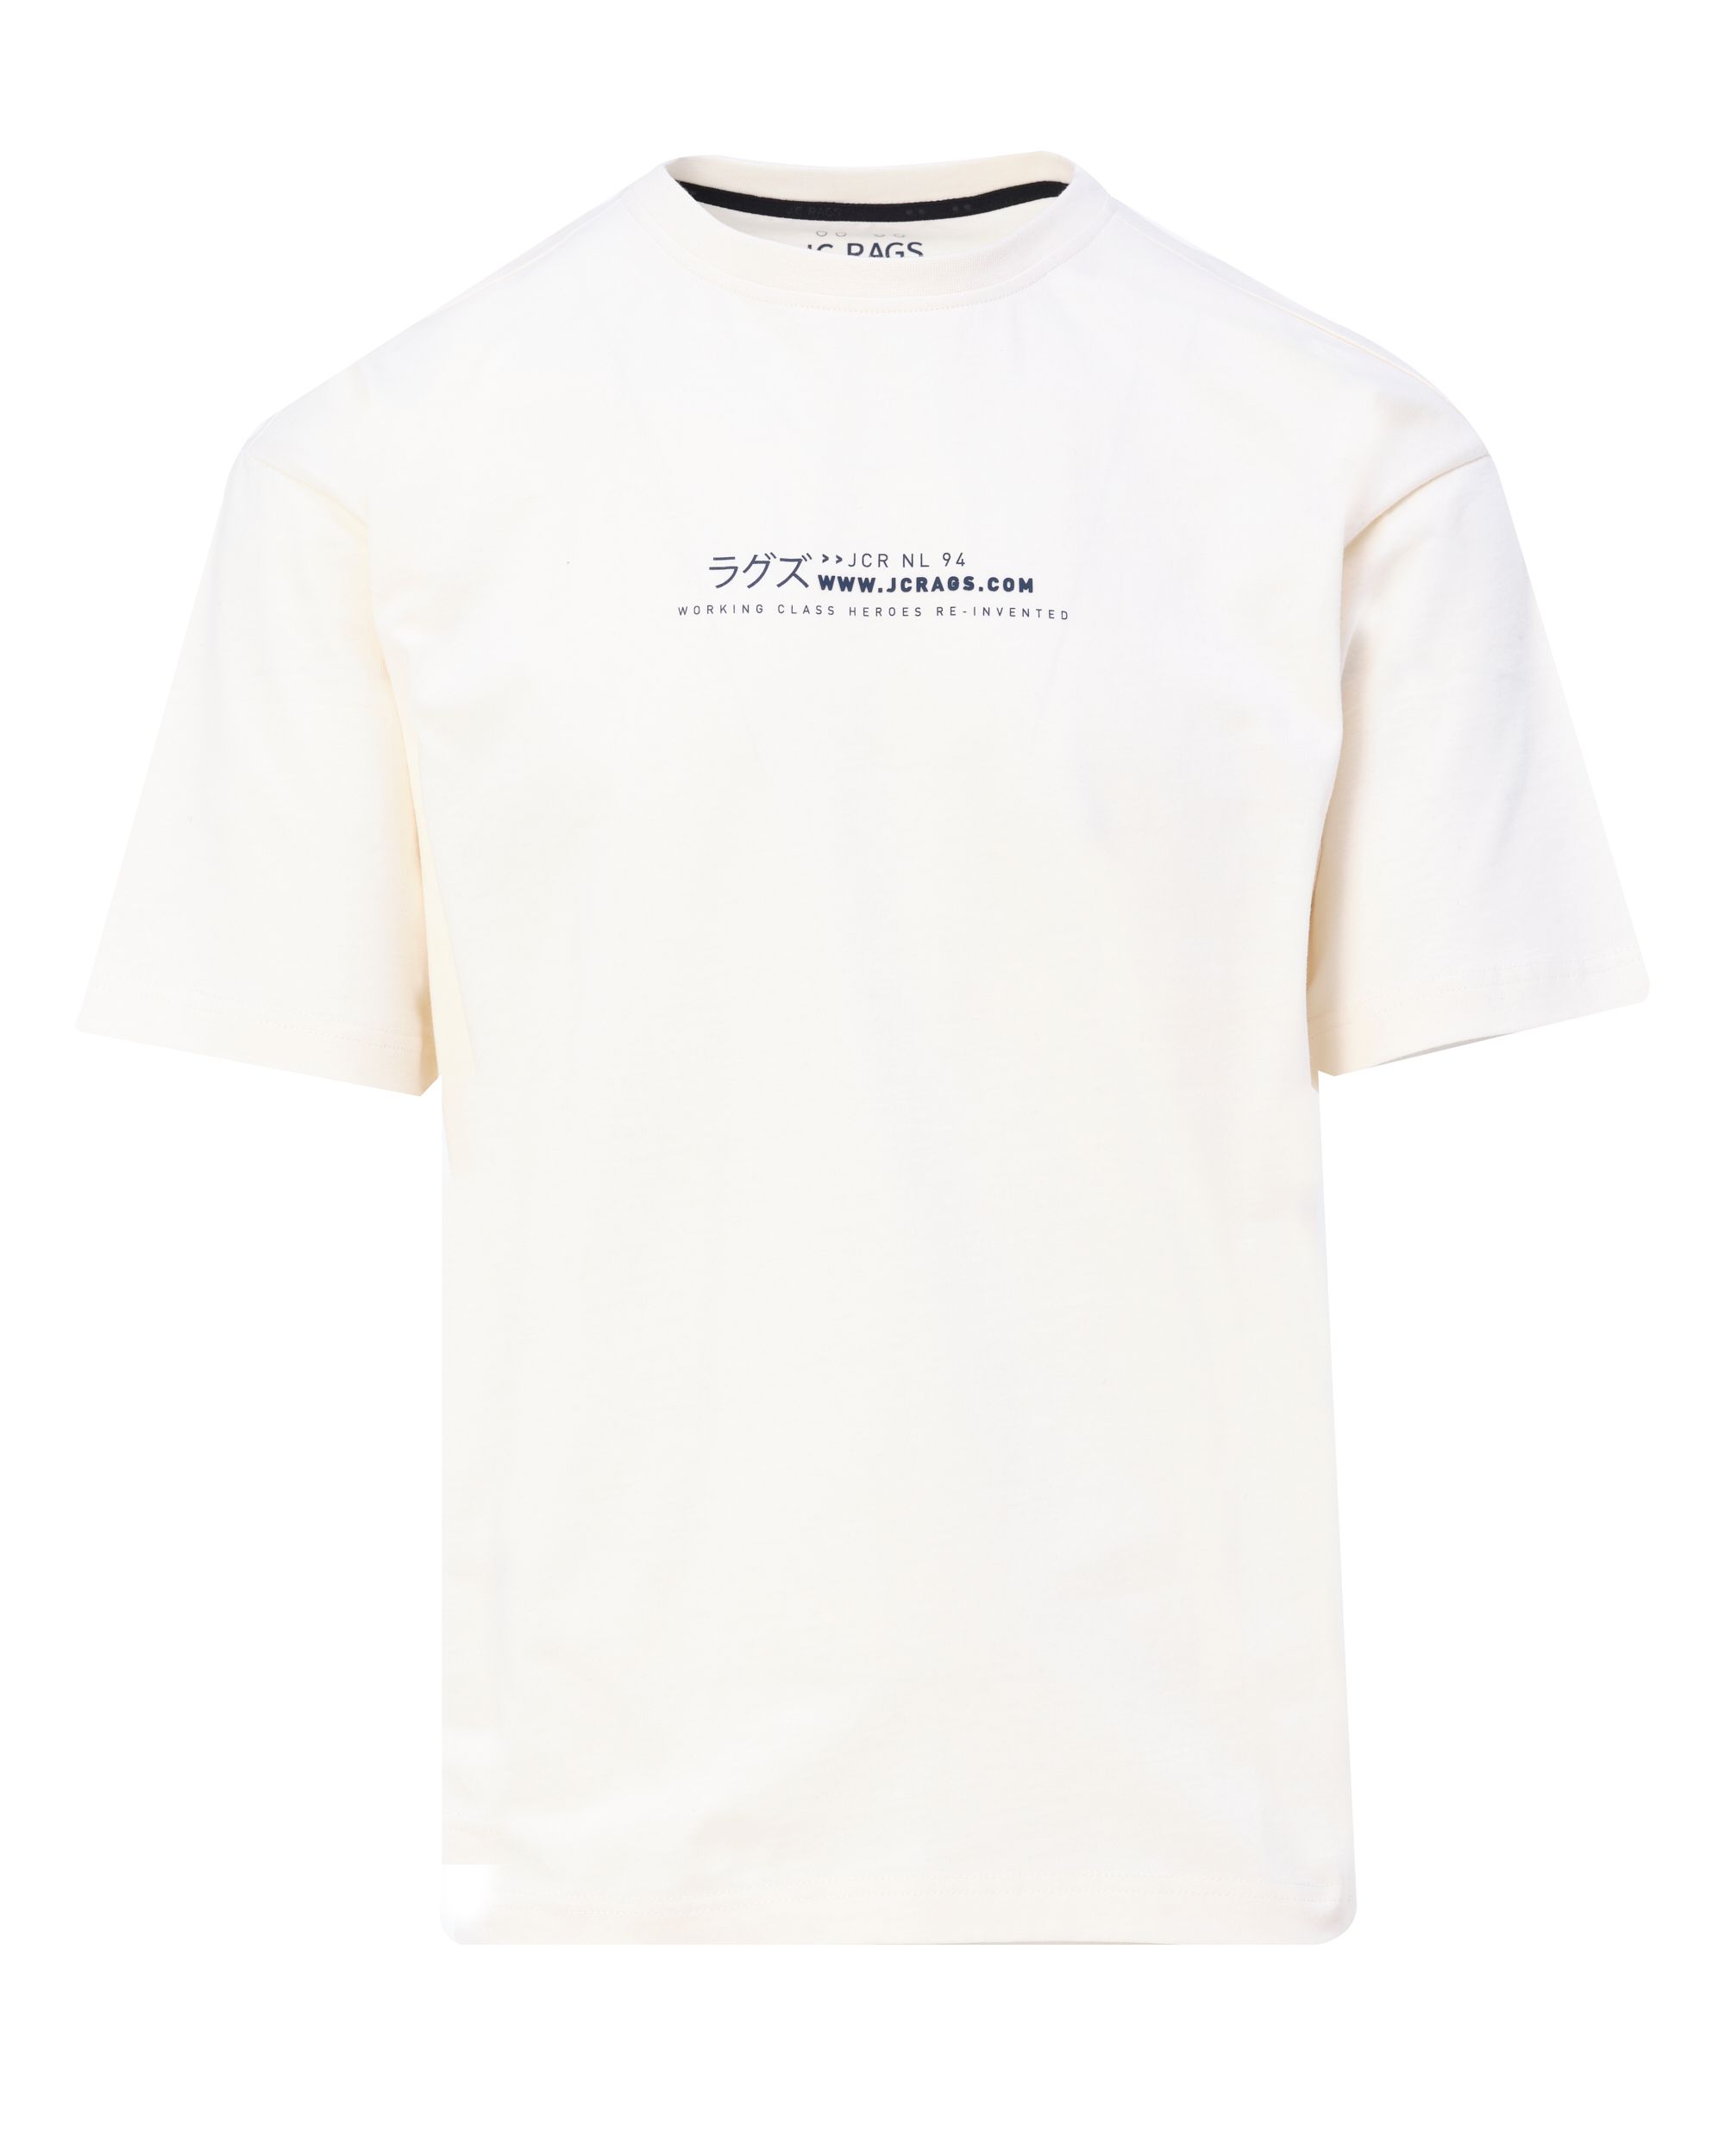 J.C Rags T shirt KM Coconut milk 084874-001-L